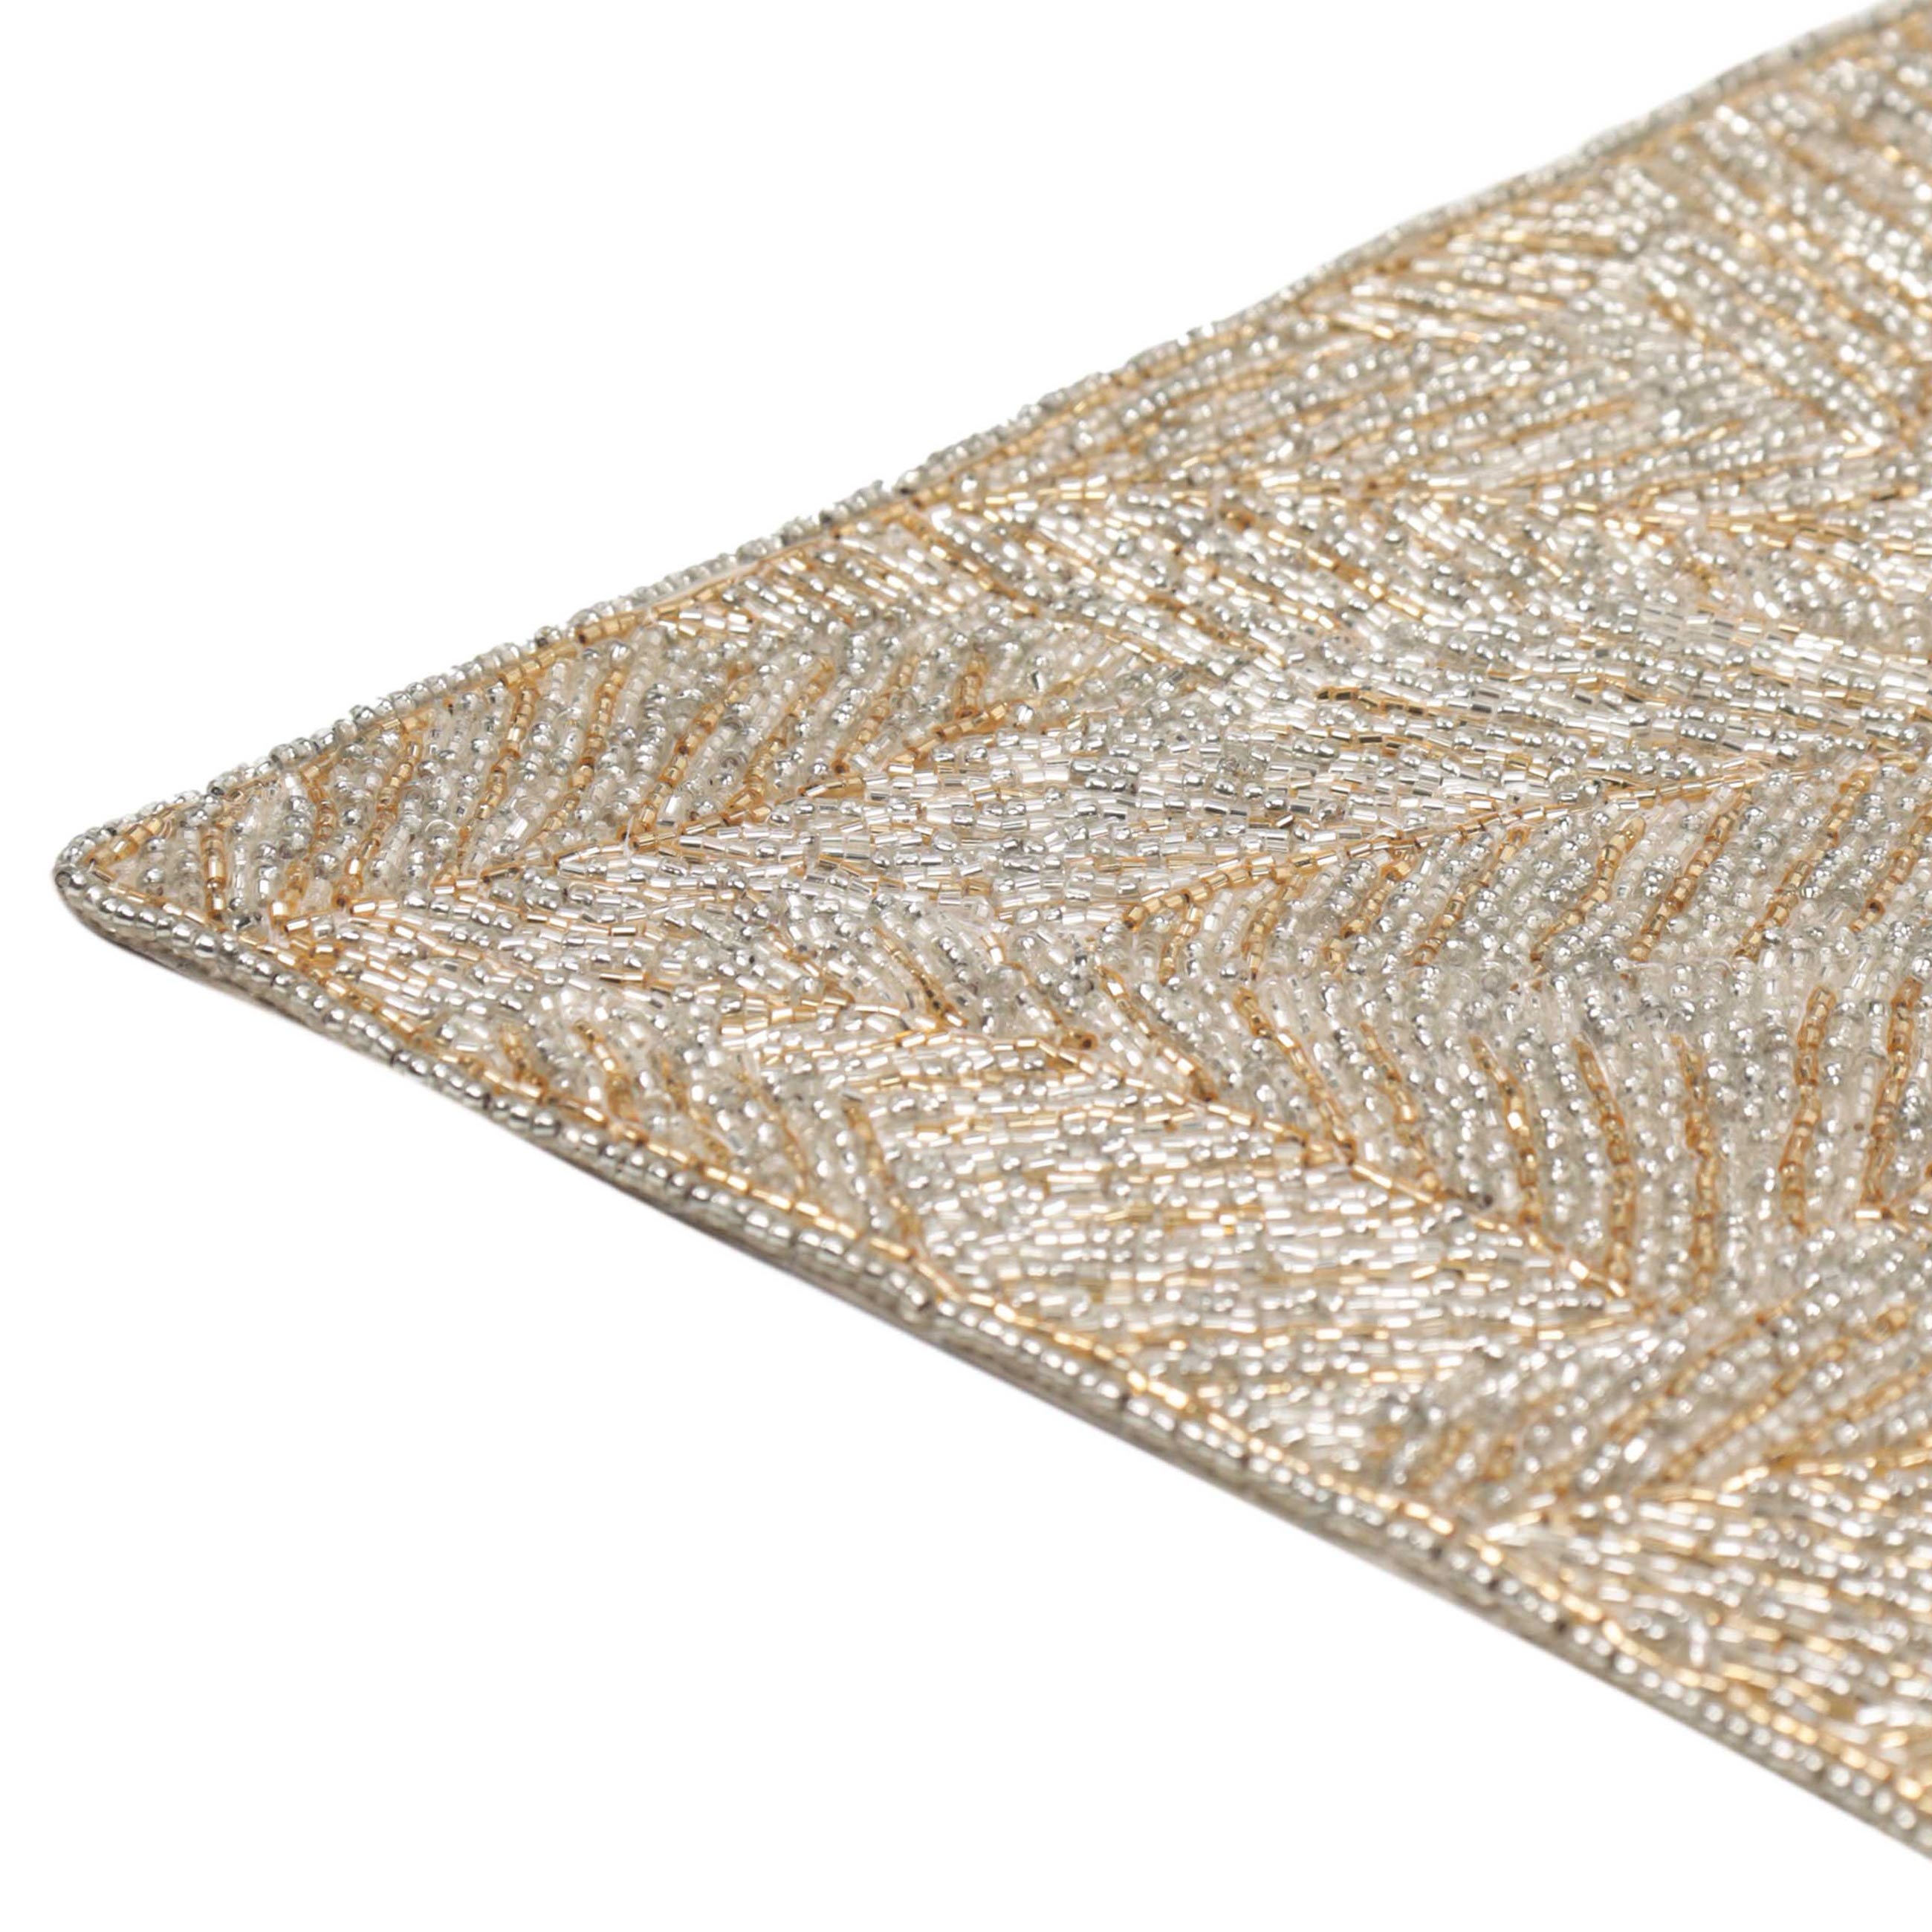 Салфетка под приборы, 30х45 см, бисер, прямоугольная, серебристо-золотистая, Листья, Art beads изображение № 2